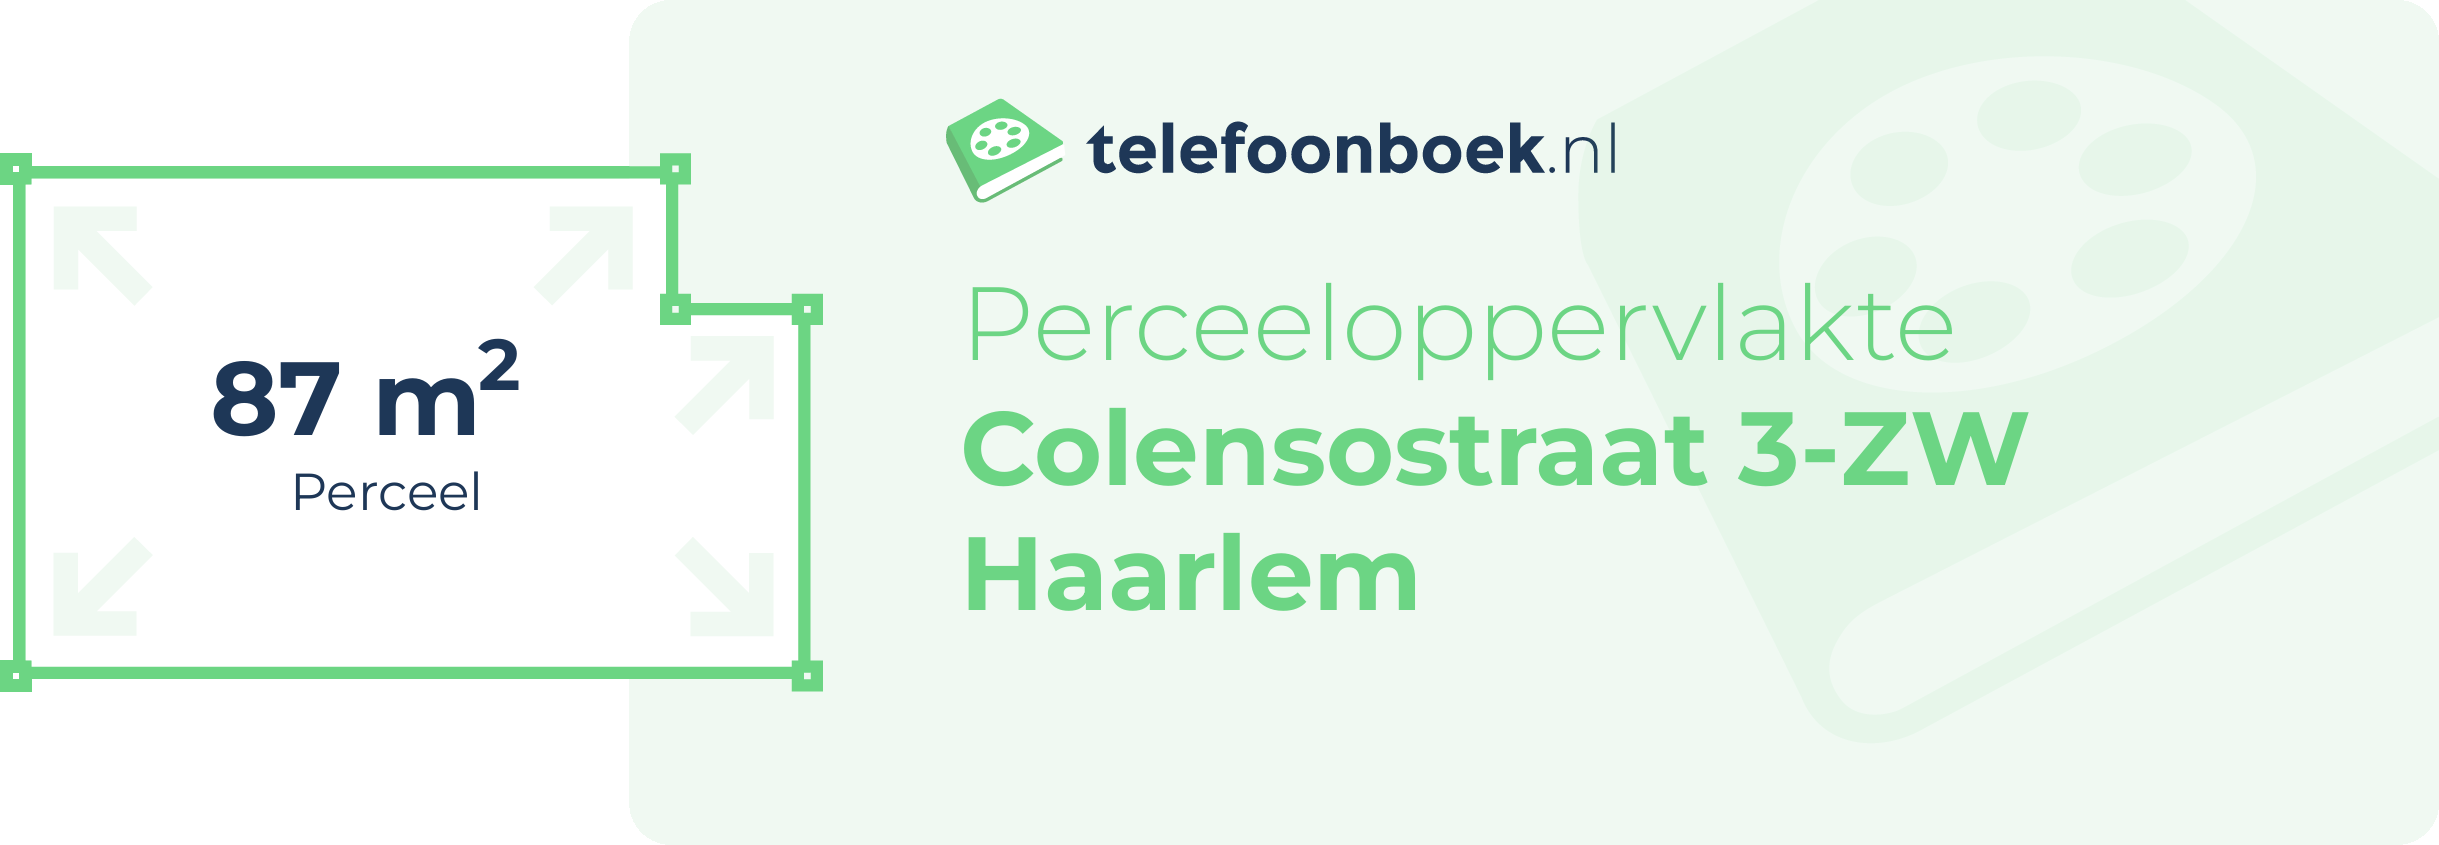 Perceeloppervlakte Colensostraat 3-ZW Haarlem